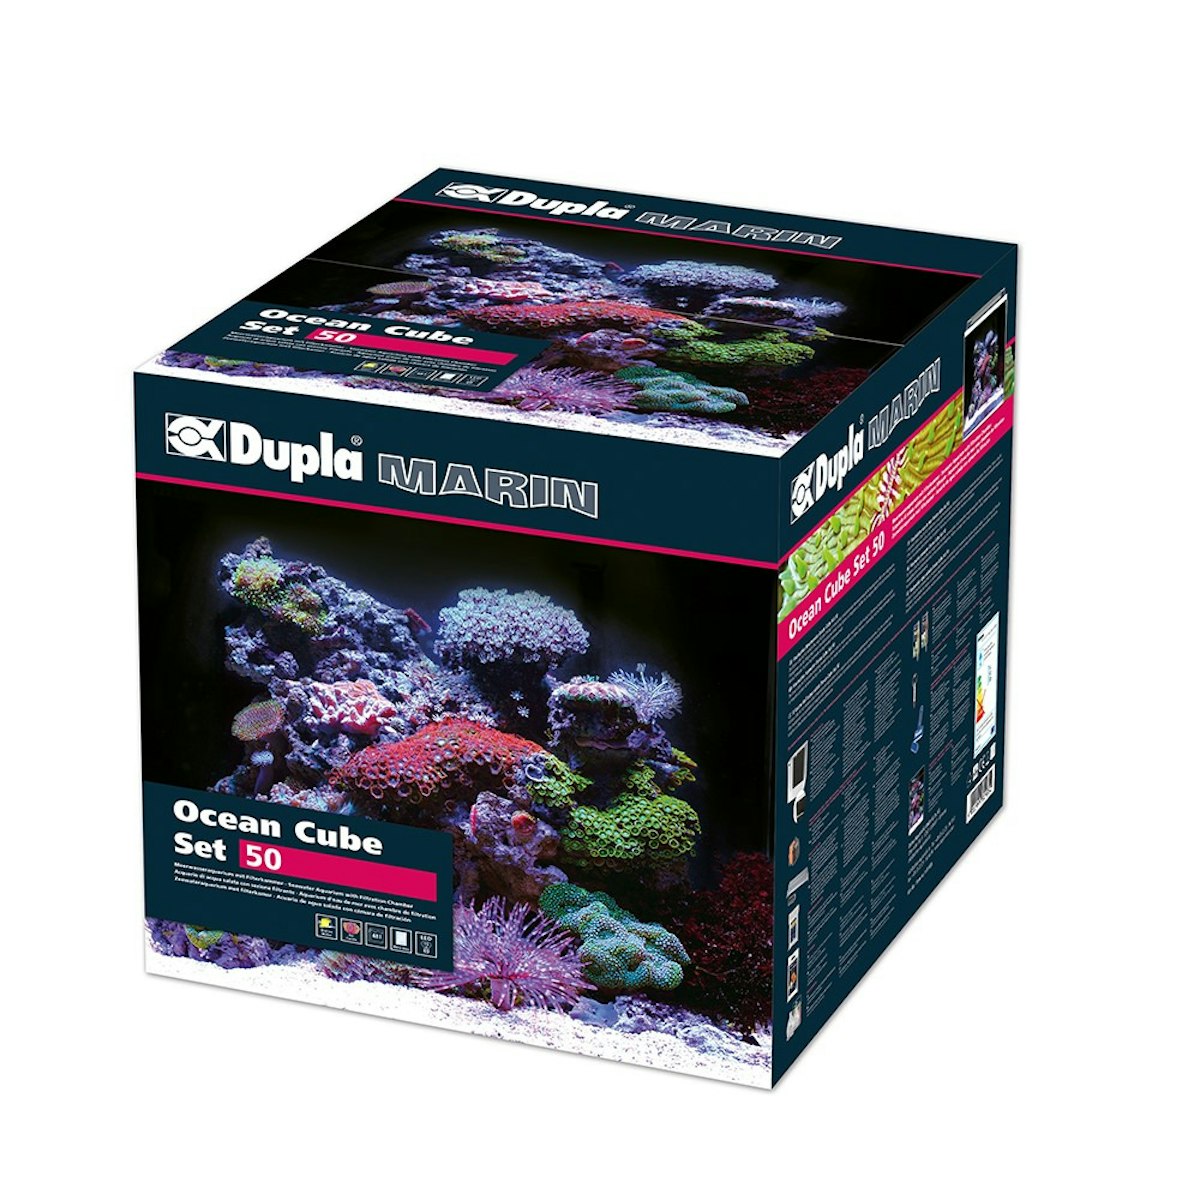 Dupla Marin Ocean Cube 50 Set 34,5 x 39,4 x 35,3 Centimeter Aquarium Set von Dupla